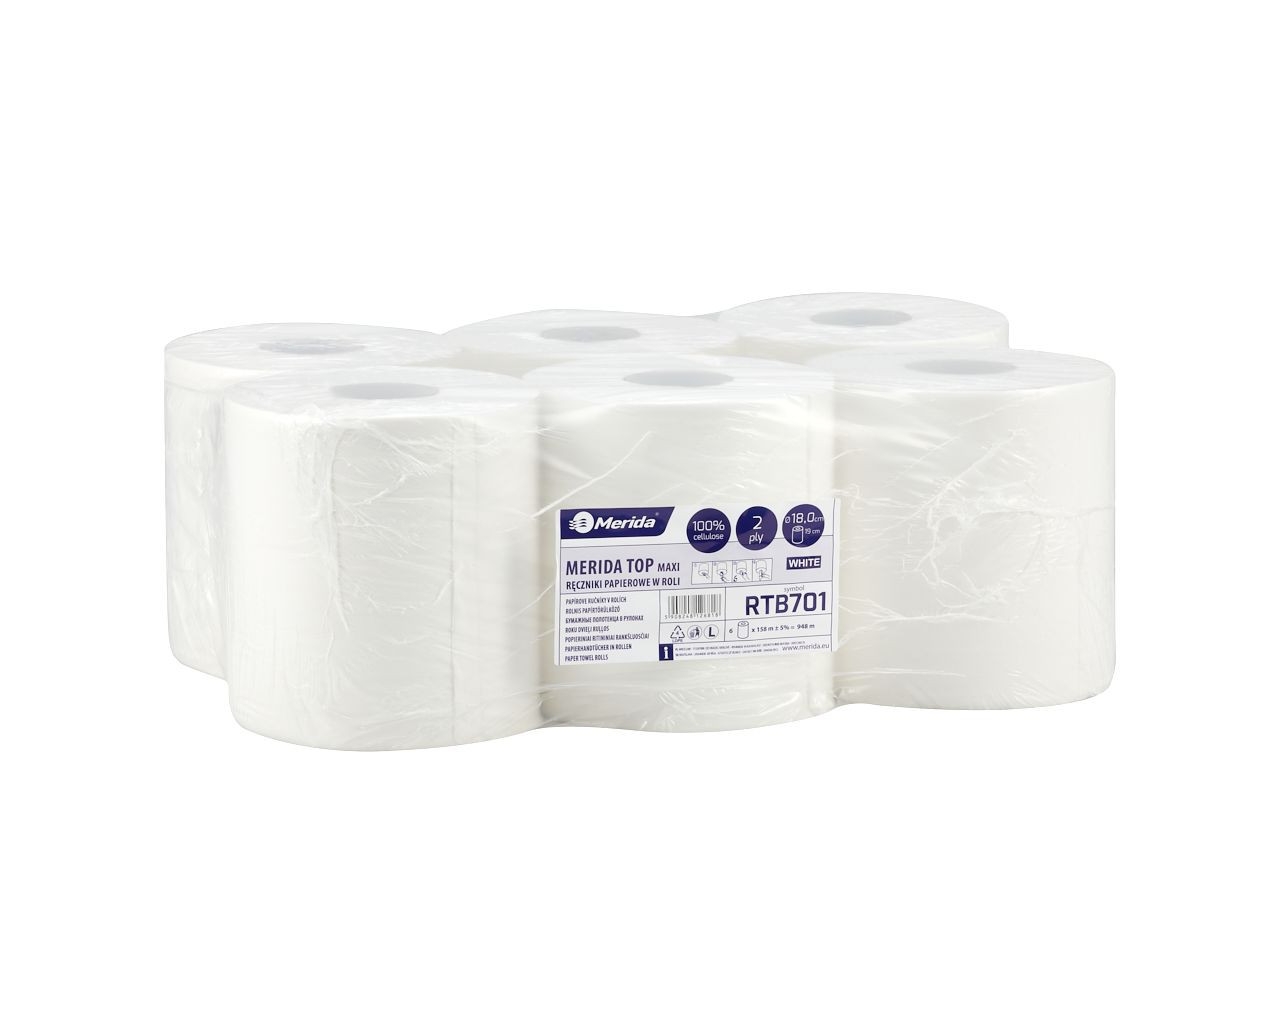 Ręczniki papierowe w roli TOP MAXI, białe, celulozowe, dwuwarstwowe, zgrzewka 6 szt.